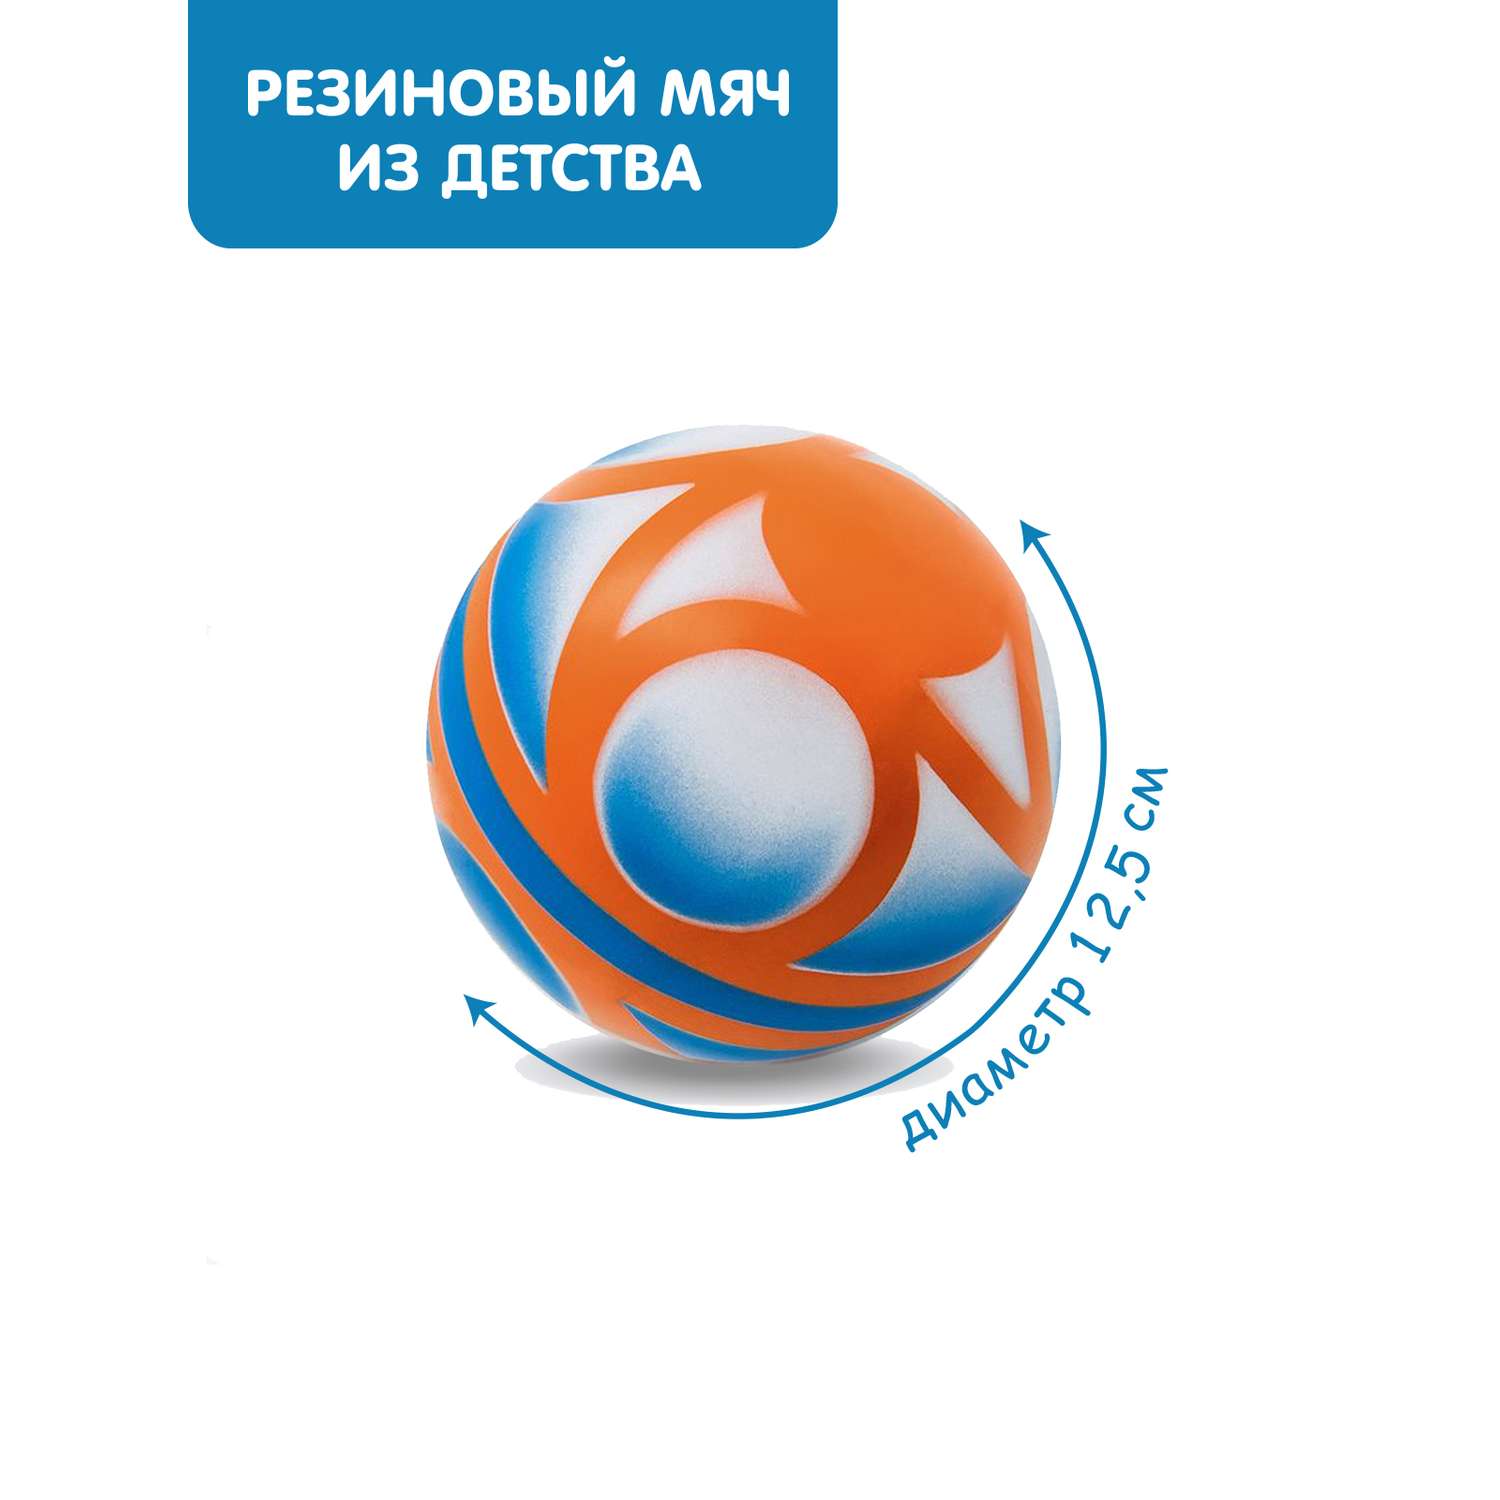 Мяч ЧАПАЕВ диаметр 125 мм Кувшинка оранжевый синий белый - фото 1